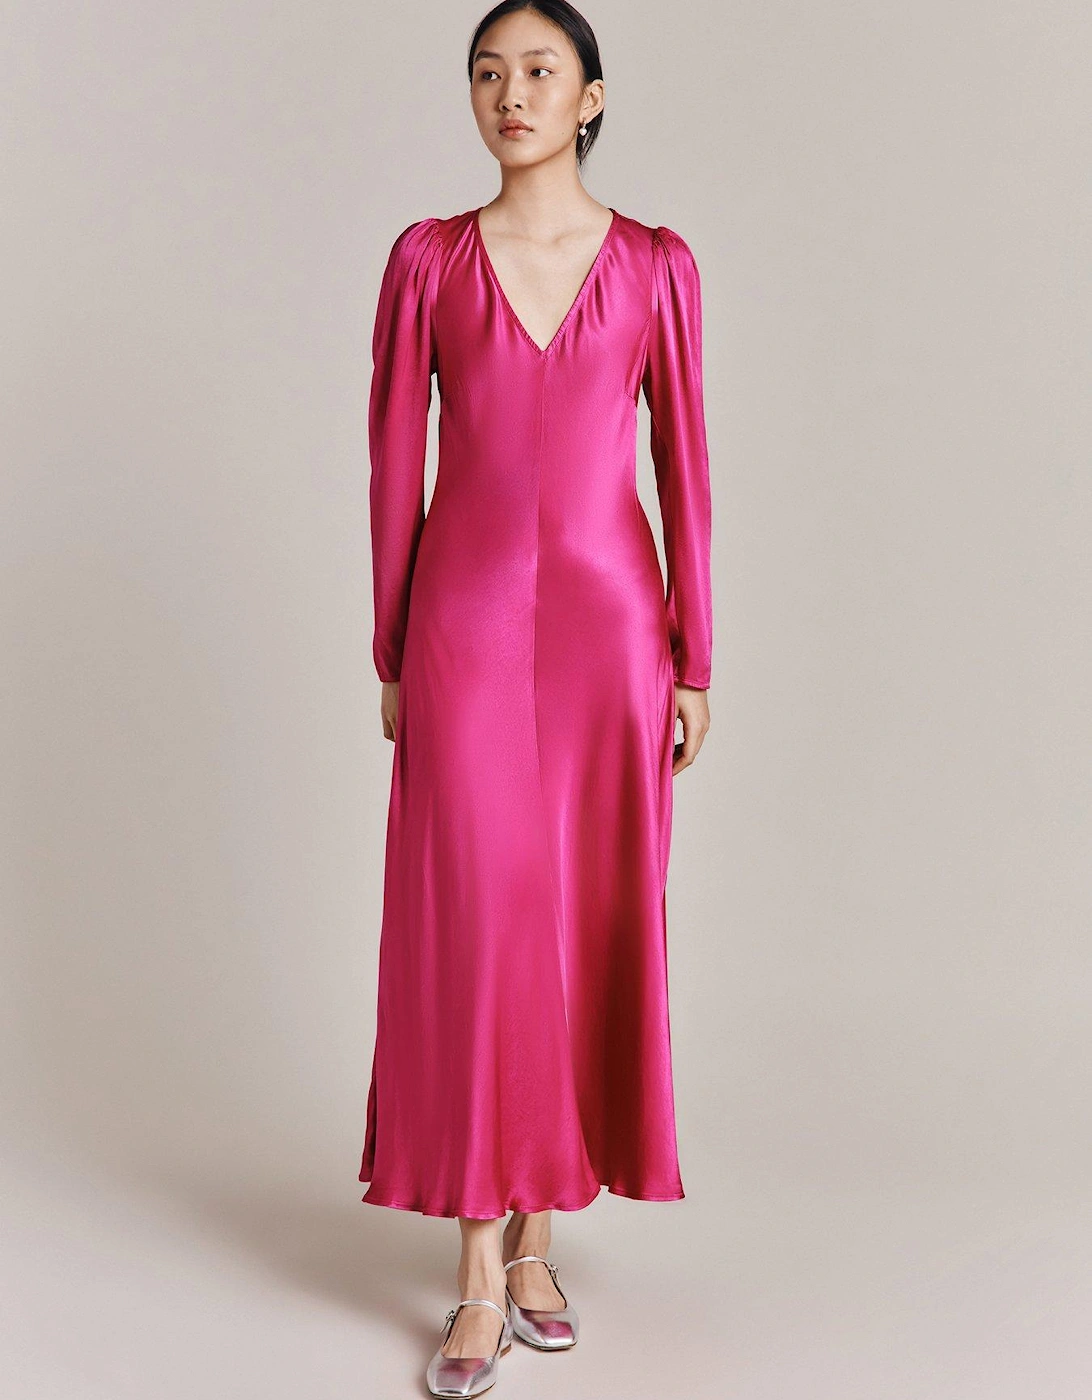 Etta Satin Midi Dress - Pink, 2 of 1